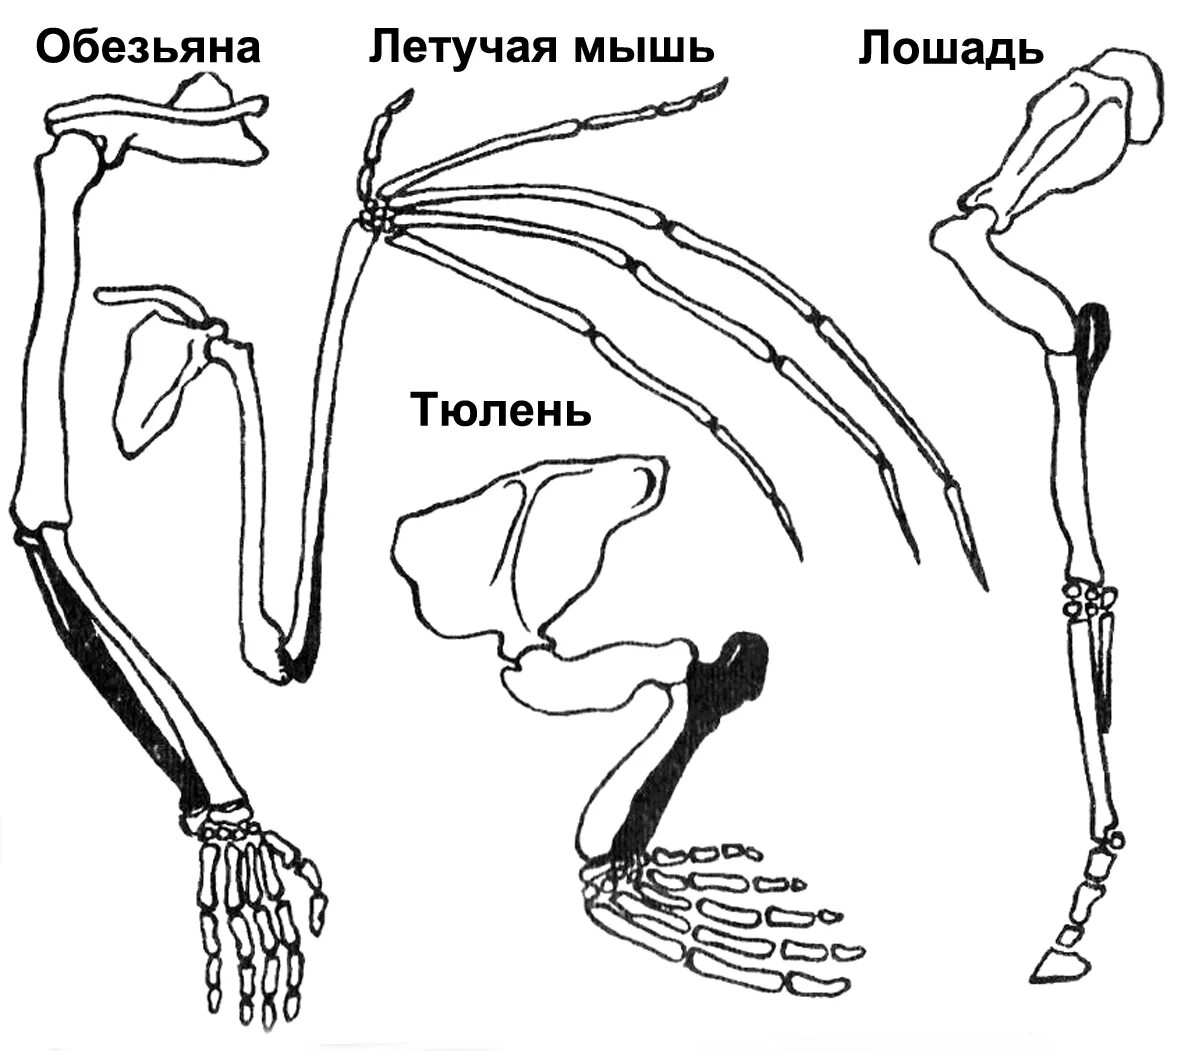 Скелет передних конечностей у млекопитающих. Скелет пояса задних конечностей млекопитающих. Пояс задних конечностей у млекопитающих. Строение задних конечностей млекопитающих. Строение скелета верхней конечности позвоночных животных.